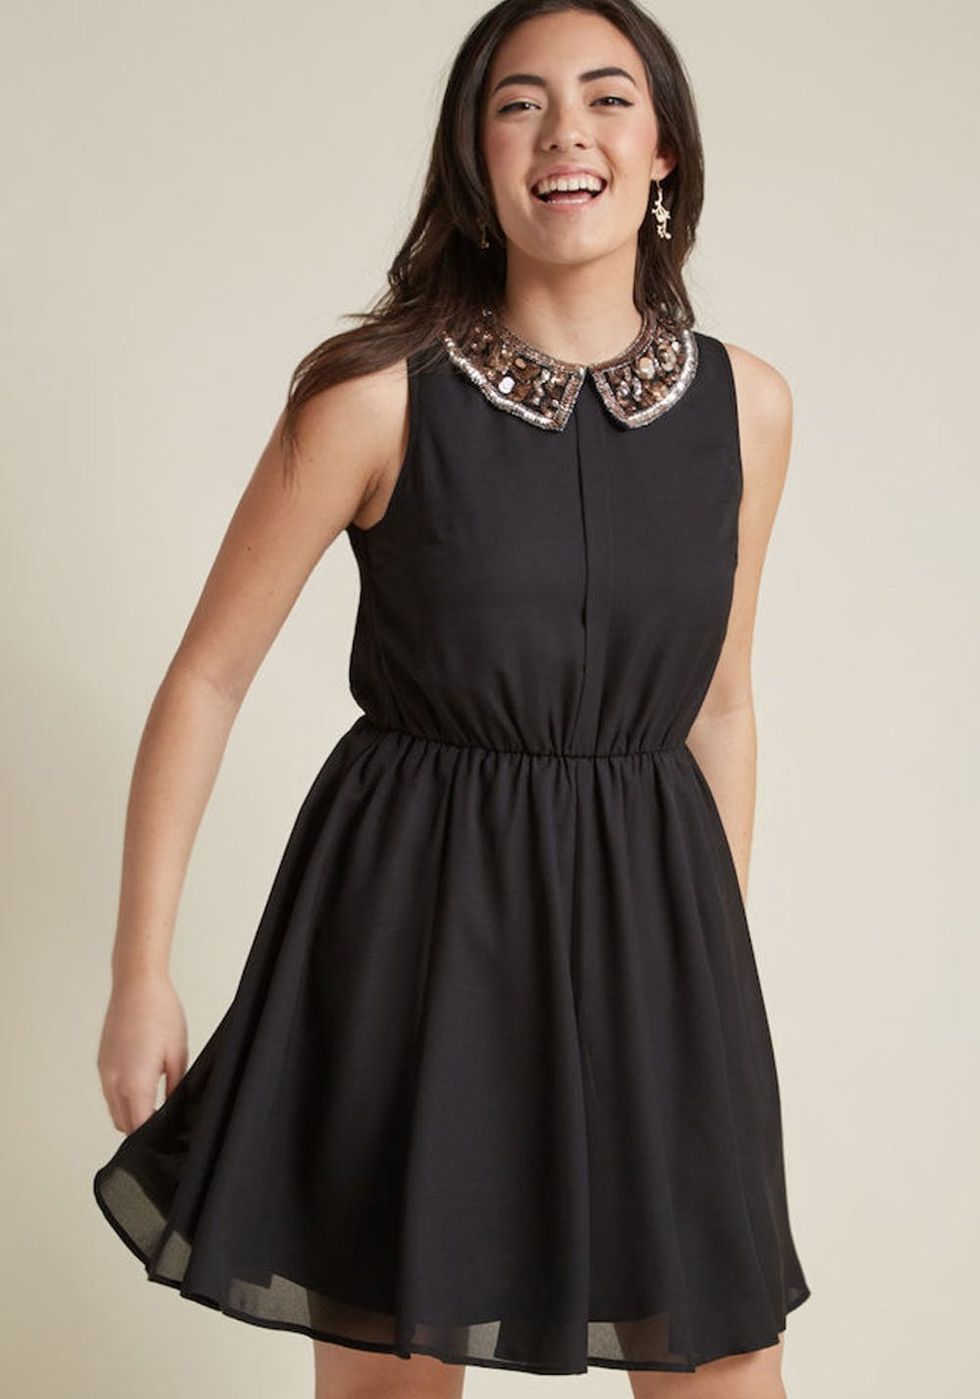 11 Not-So-Basic Little Black Dresses - Brit + Co